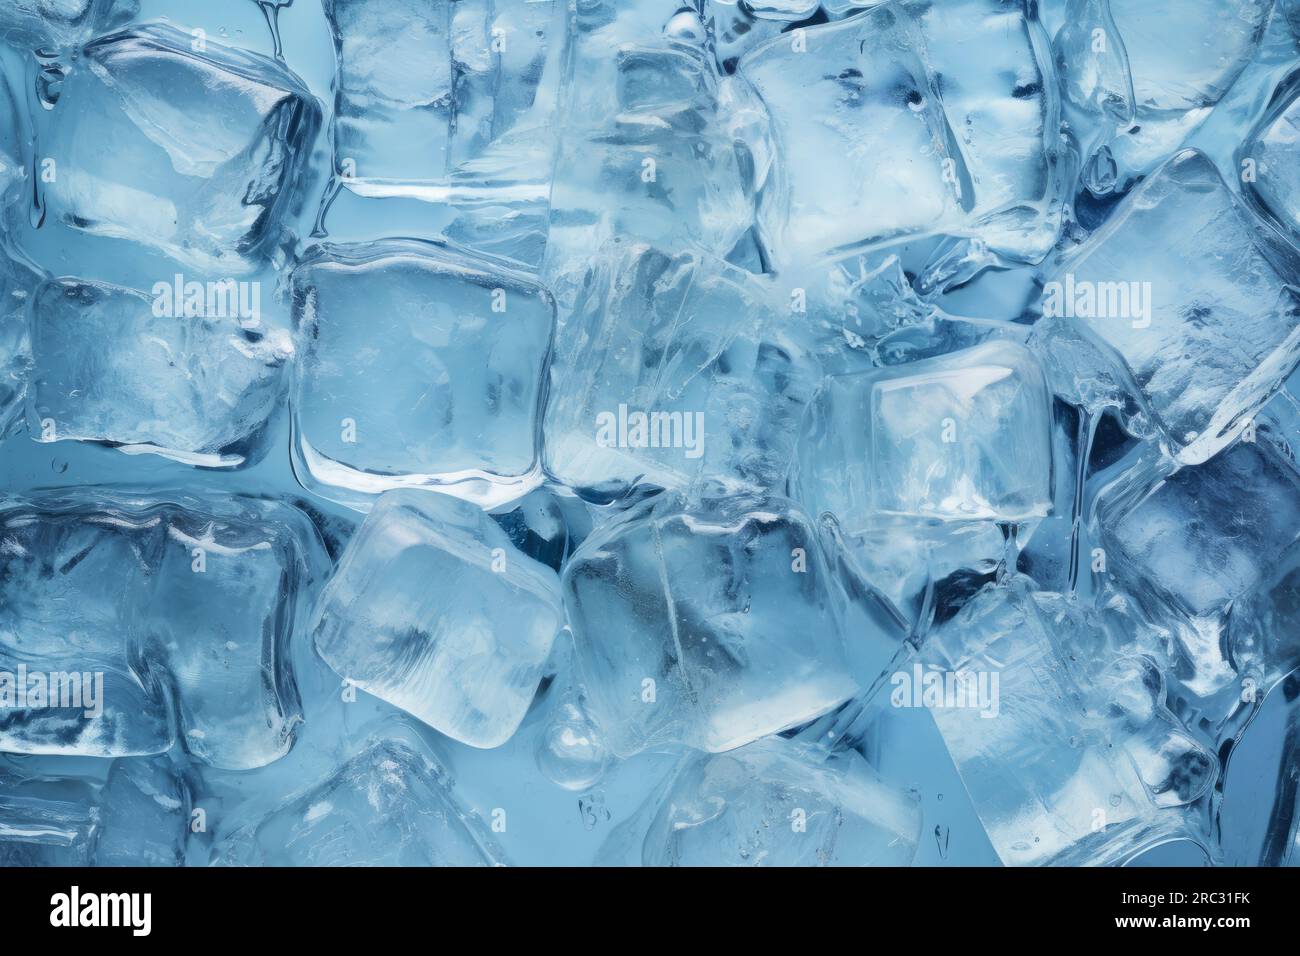 Frische Eiswürfel zum Kühlen der Getränke. Gefrorenes reines Wasser. Klarer Eiswürfelhintergrund. Ansicht der Eisstücke auf dem Tisch von oben. Hellblaue Farbe. Makroaufnahme Stockfoto